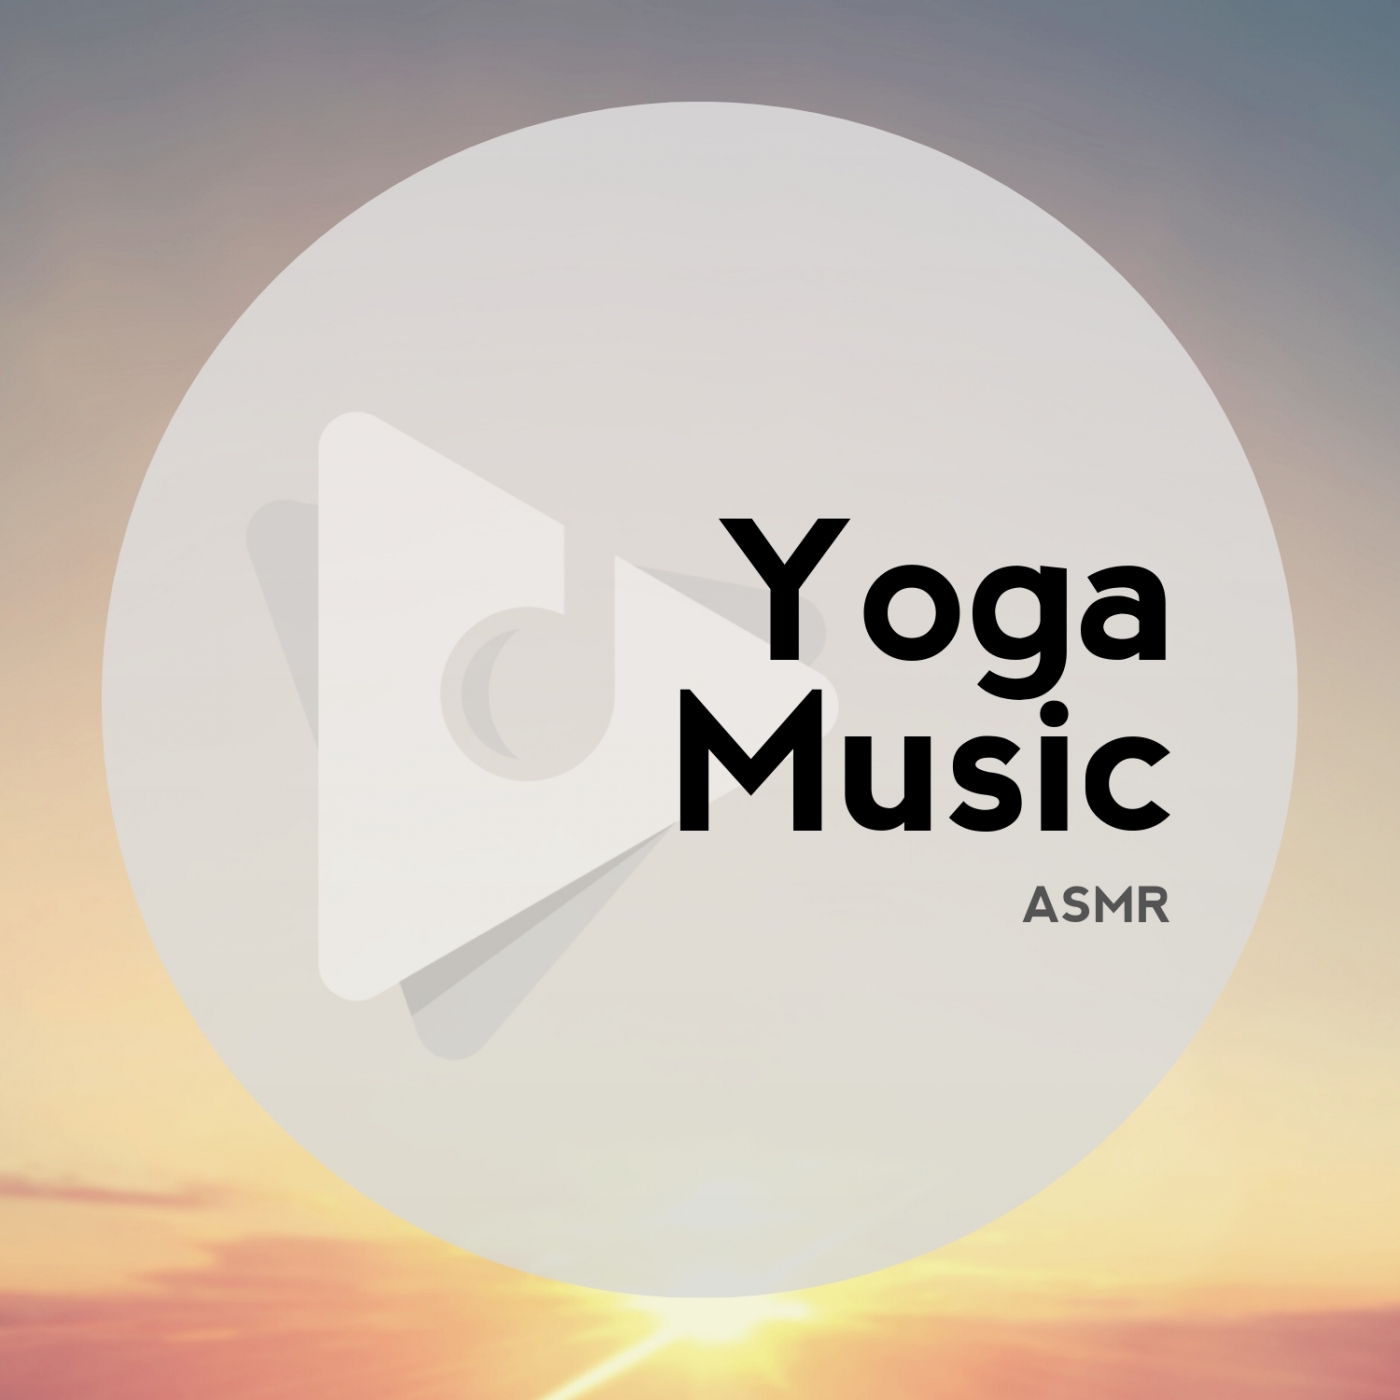 Yoga Music ASMR